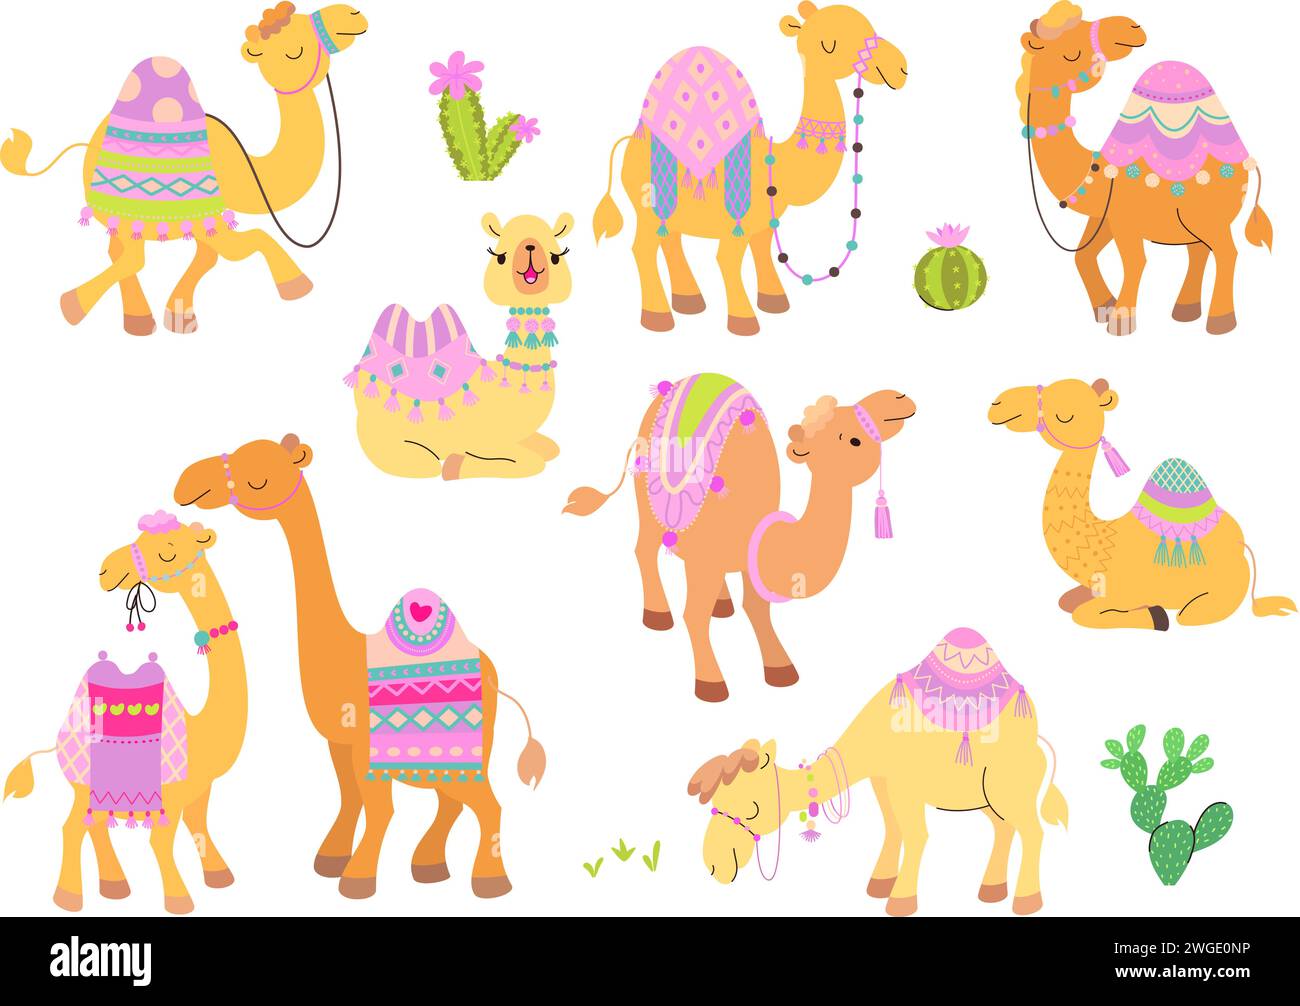 Camels Charaktere Zeichentrickset. Wüstentiere, lustiges Kamel mit Teppich und Sattel. Arabisches Tier, Kinder süße heutzutage Vektor-Sammlung Stock Vektor